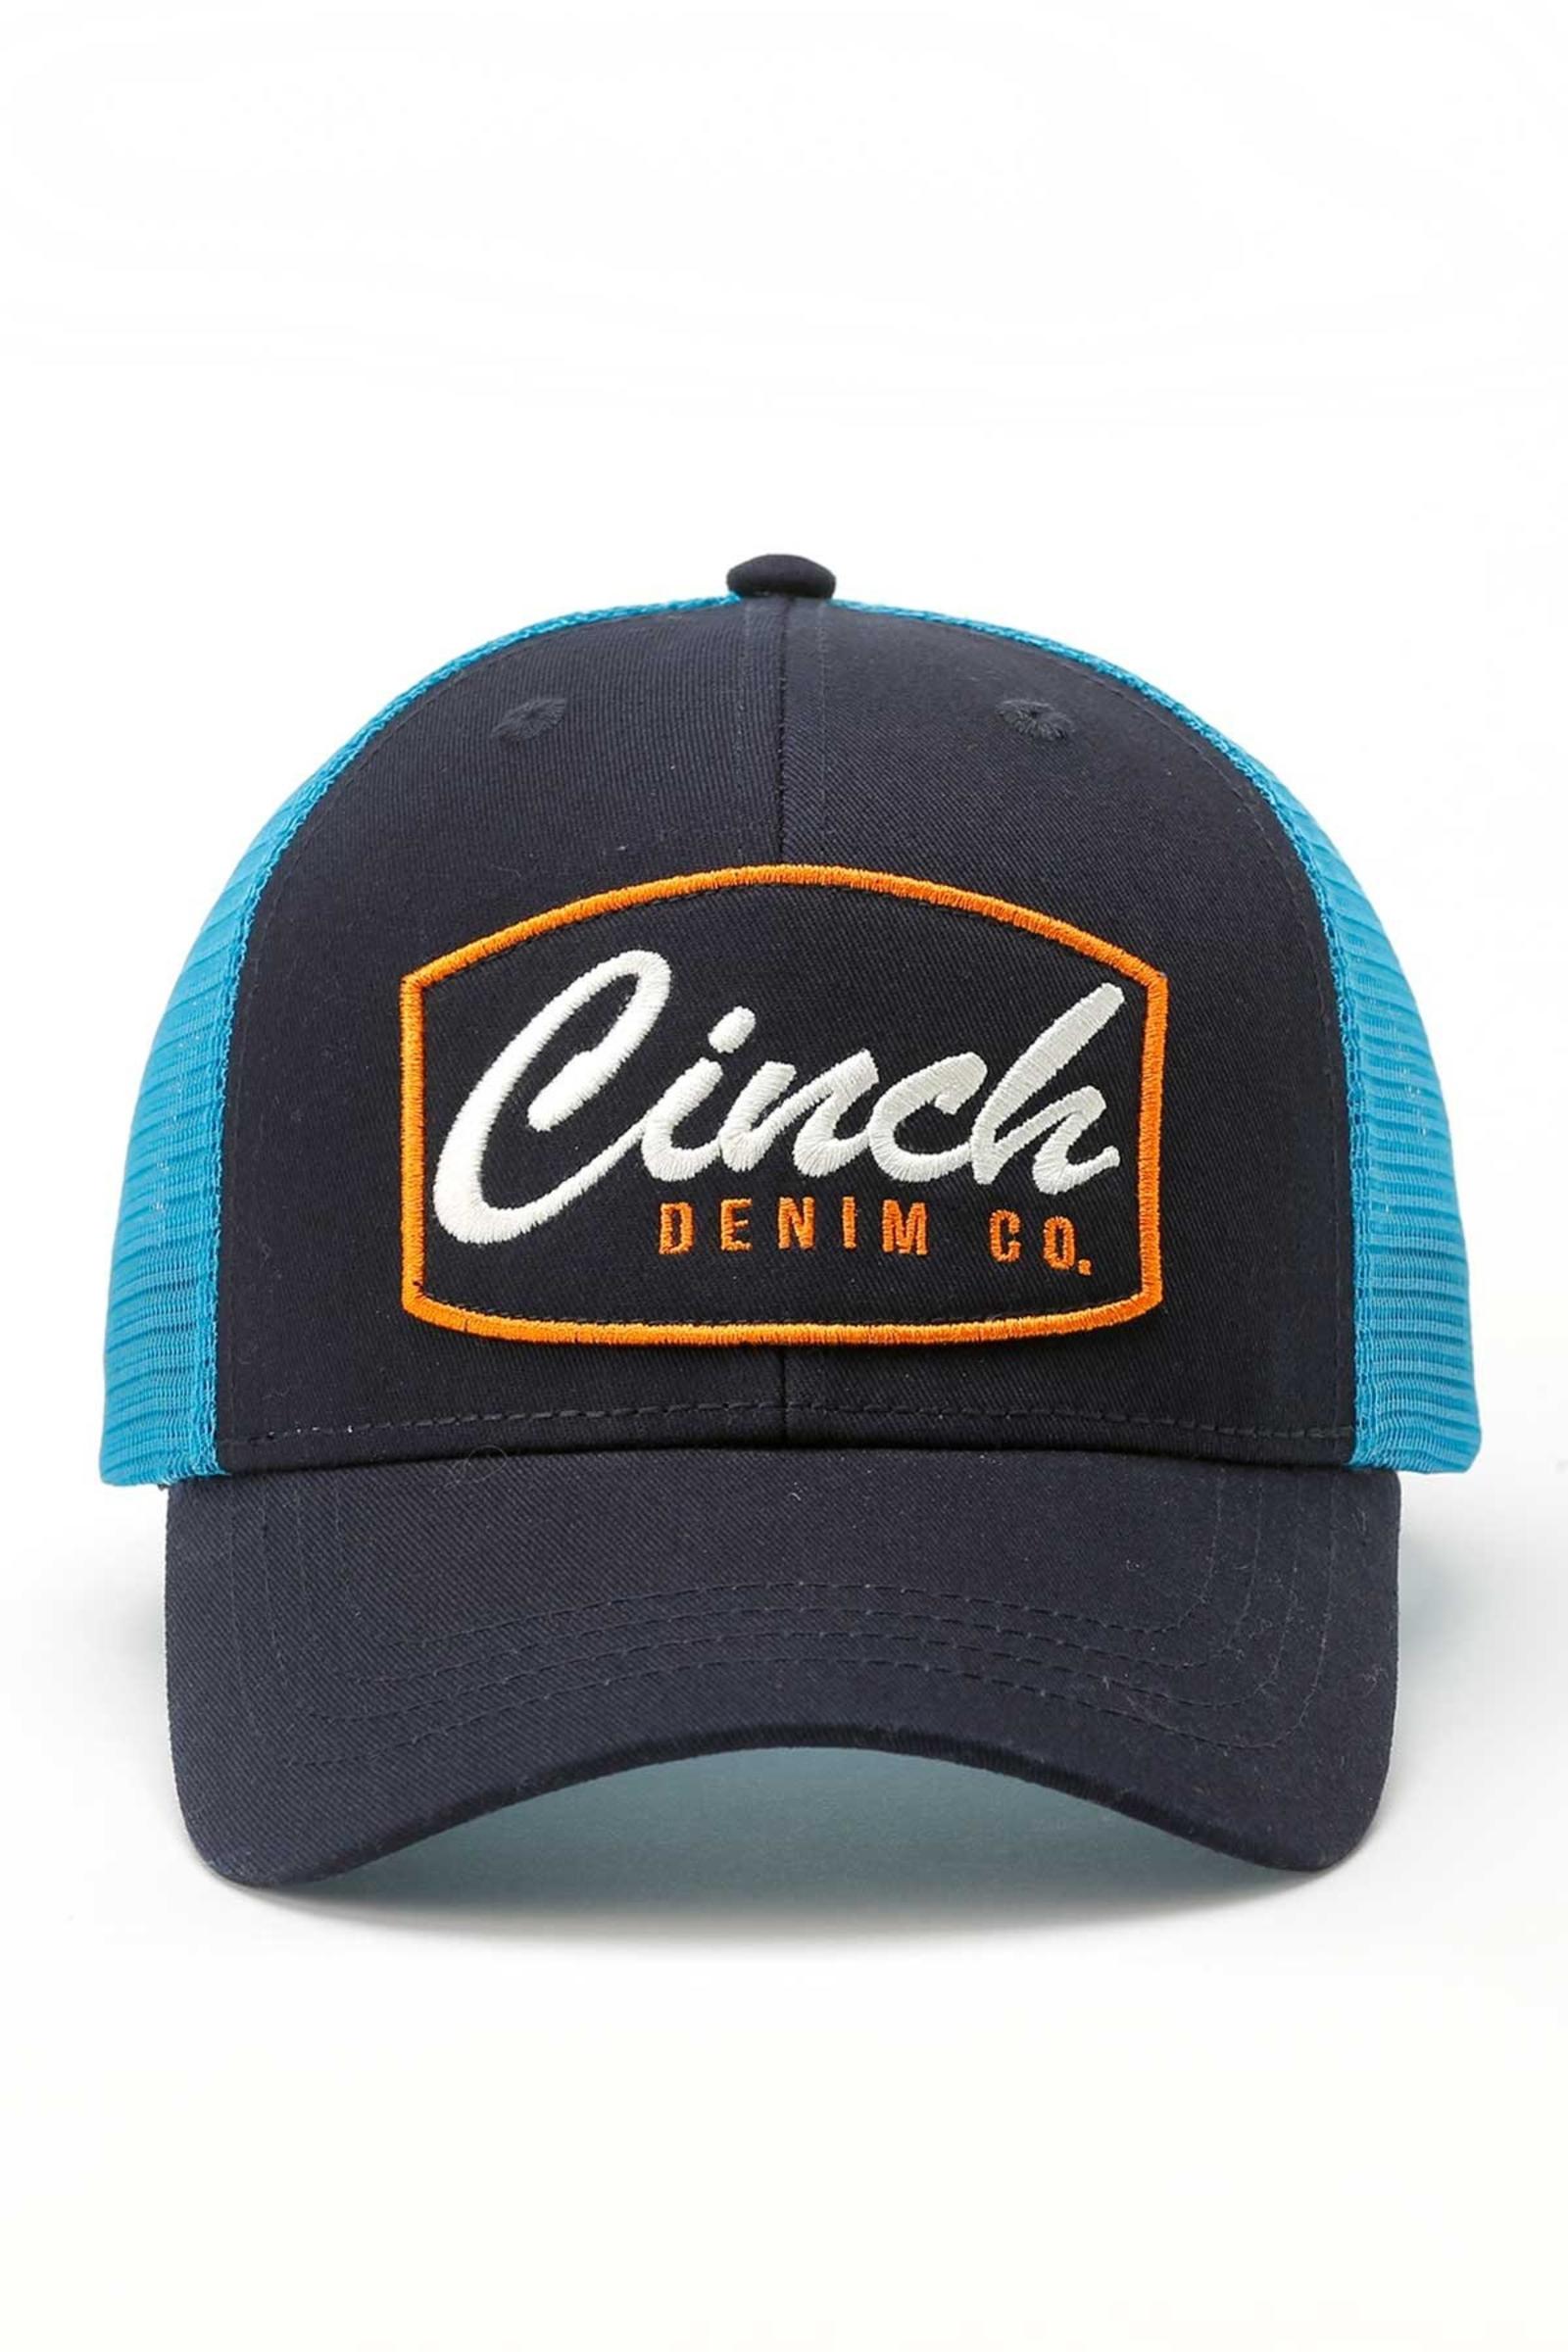 Cinch Men's Denim Trucker Cap